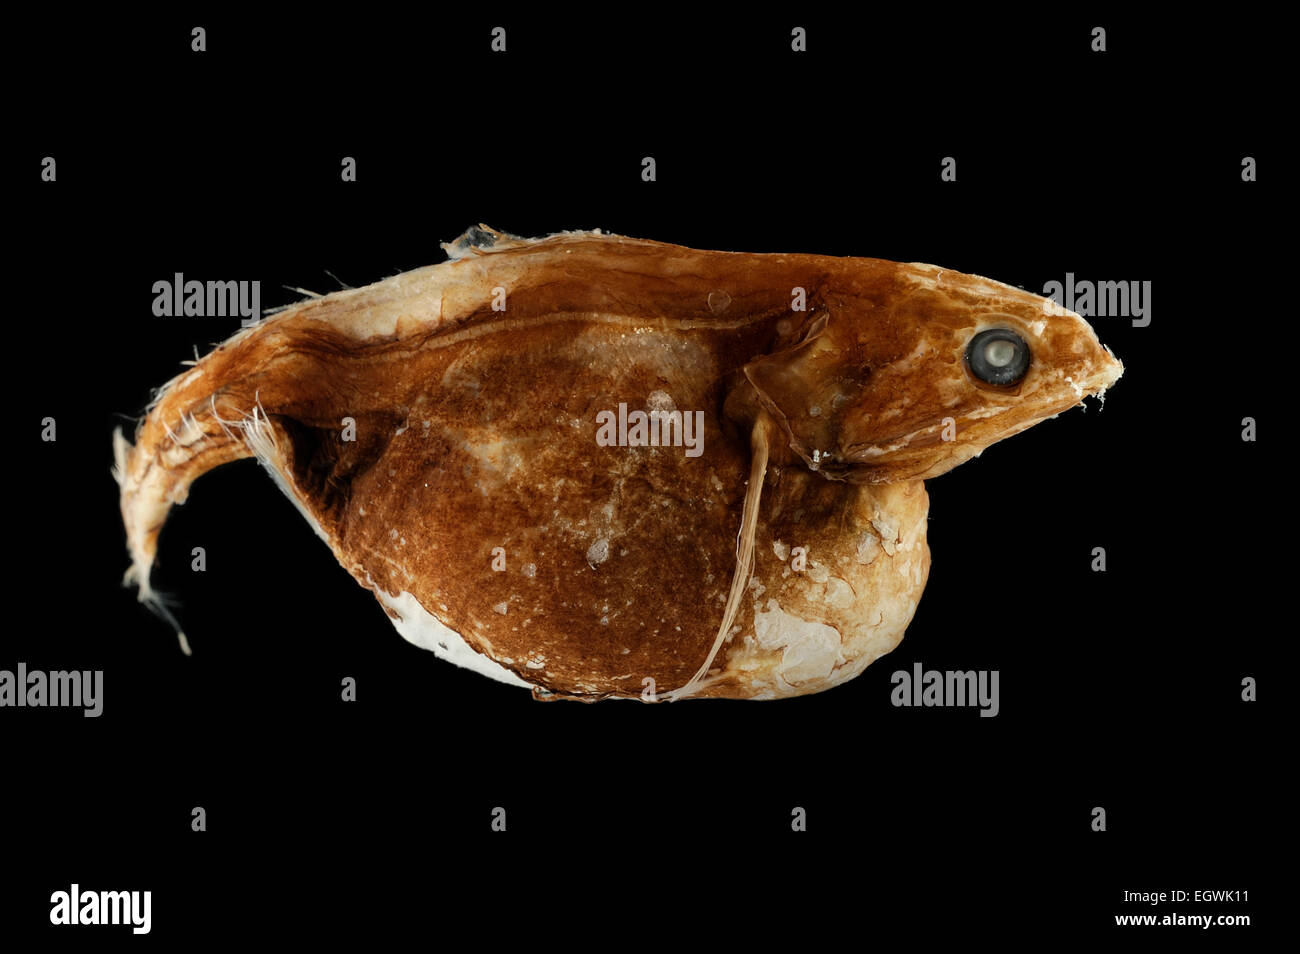 (Chiasmodon niger) ist ein räuberisch lebender Tiefseefisch aus der Familie der Schwarzen Schlinger (Chiasmodontidae). 2000m tiefe, FS Walter Herwig, 13.06.1995 Foto de stock